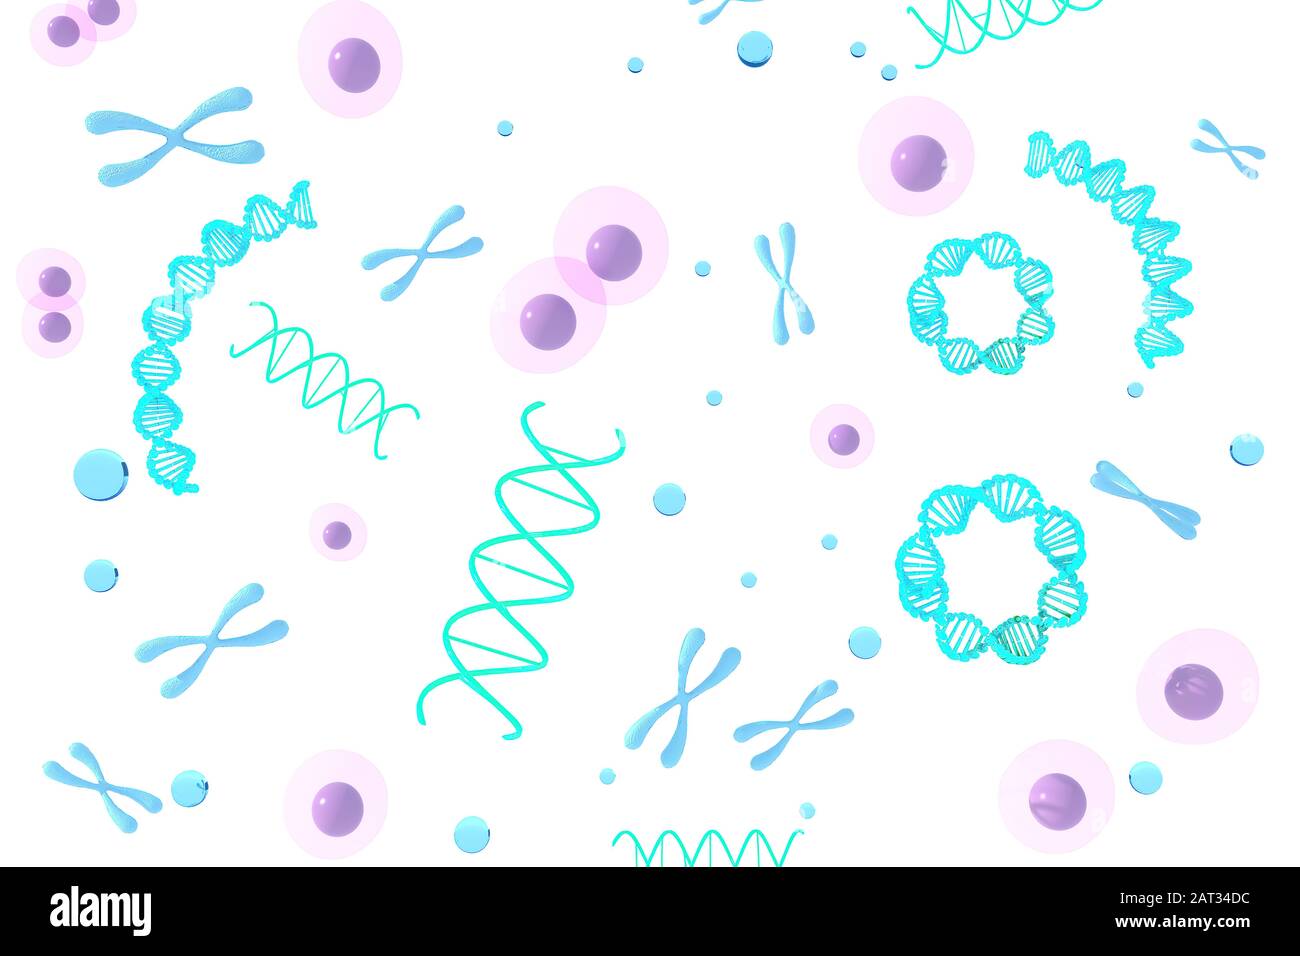 3D-Rendering von Chromosom Abstract wissenschaftlicher Hintergrund, 3D-Abbildung. Stockfoto